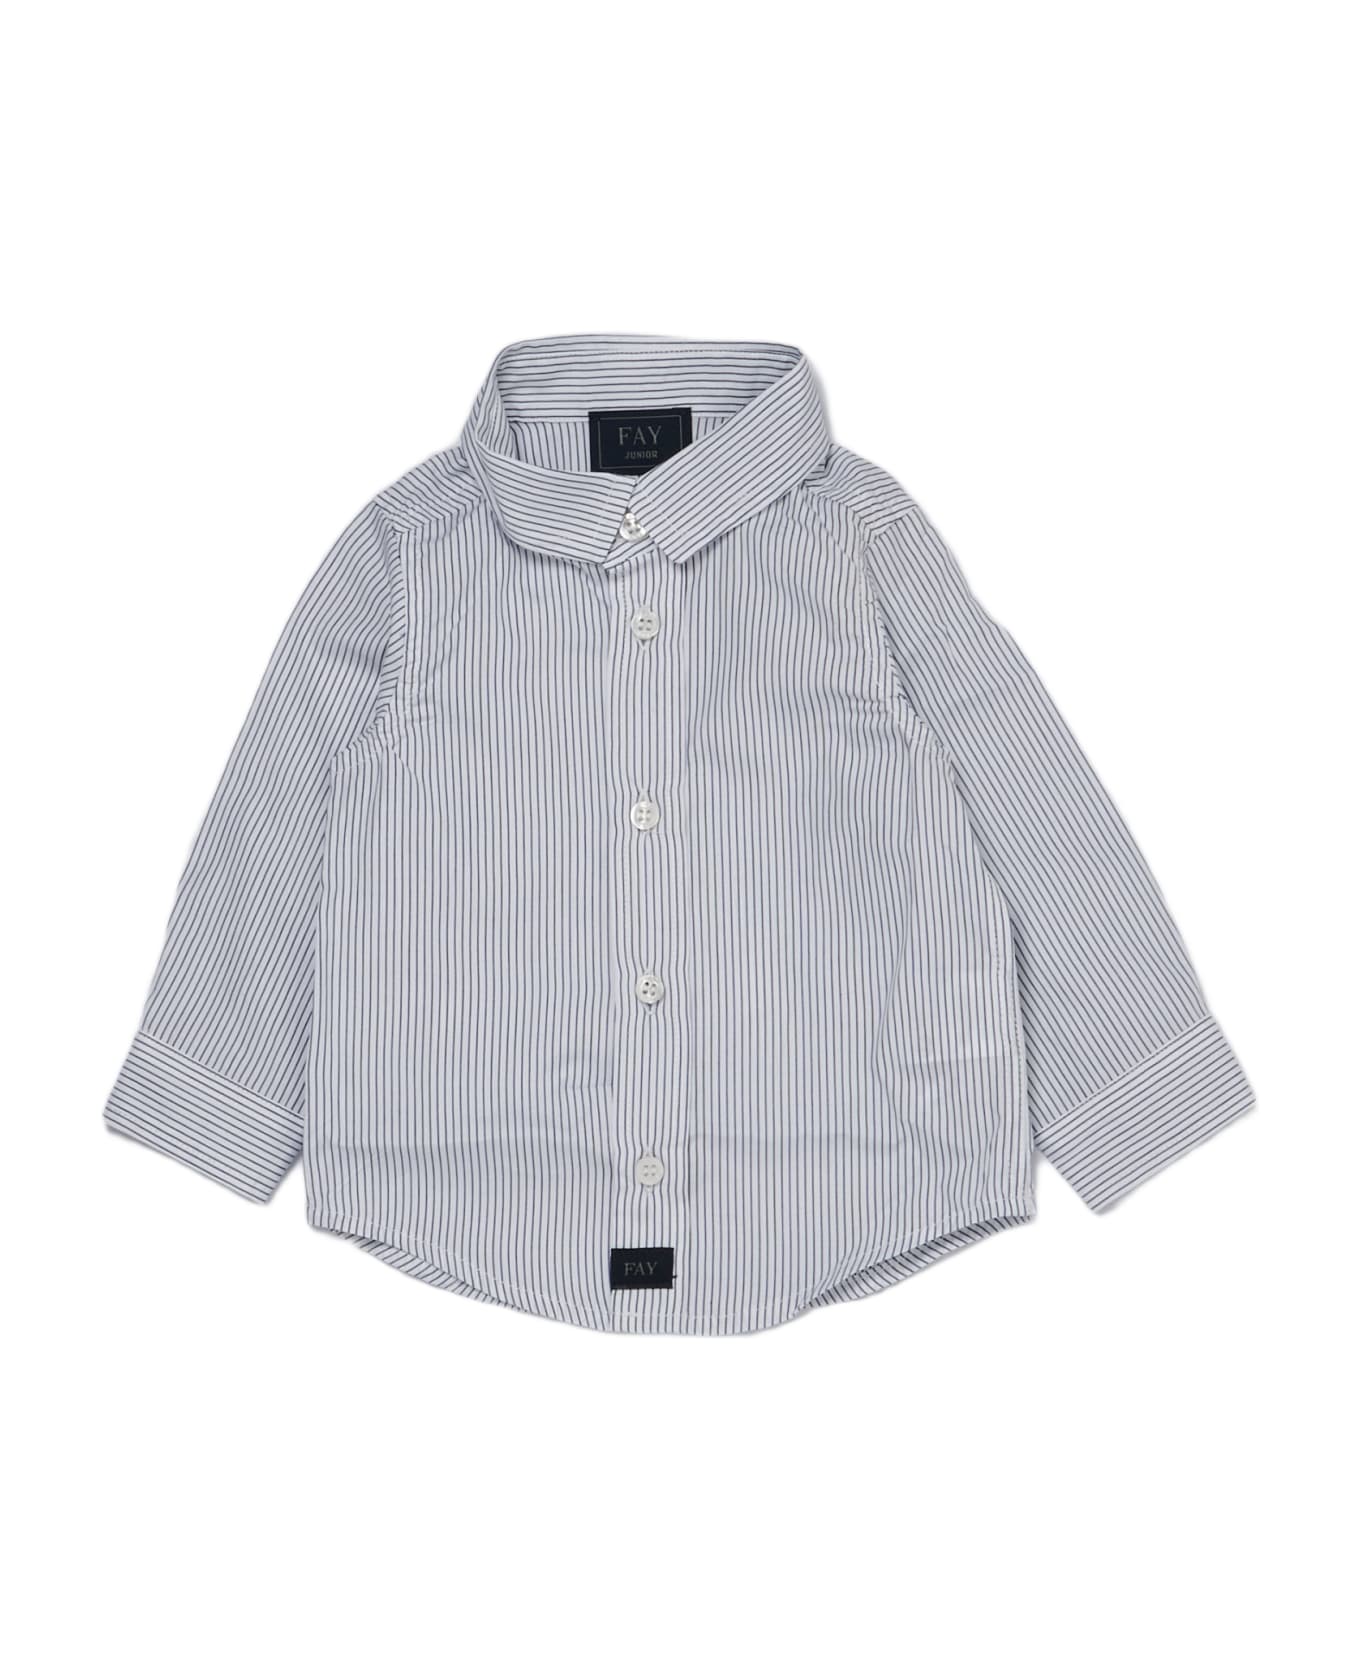 Fay Shirt Shirt - RIGA BIANCO-BLU シャツ